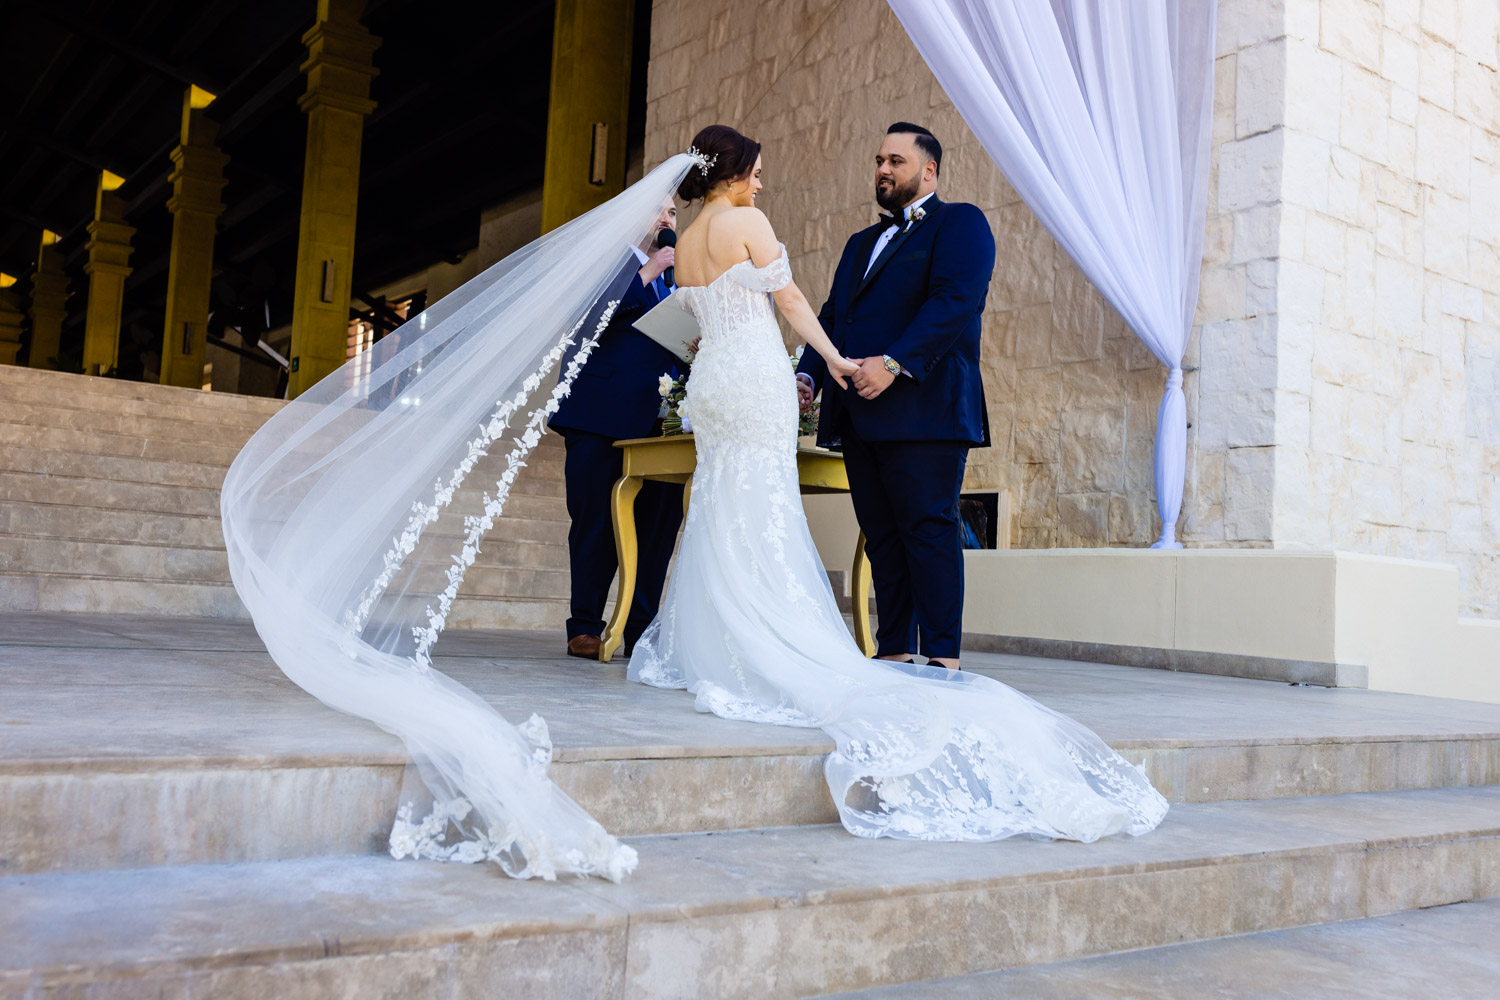 Stunning Wedding at Dreams Riviera Cancun